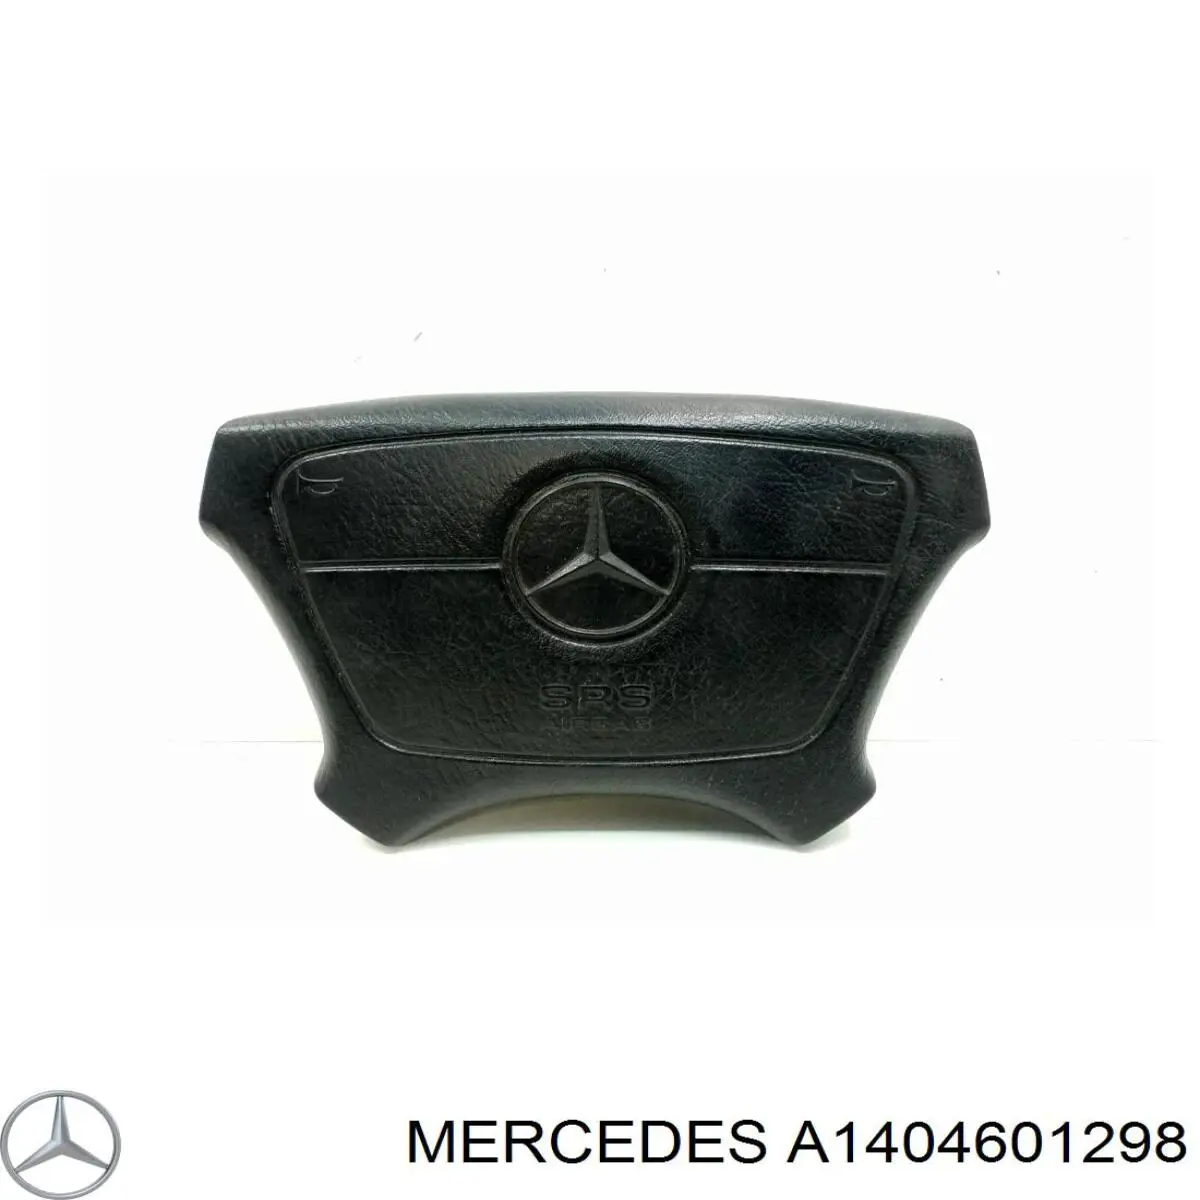 A1404601298 Mercedes cinto de segurança (airbag de condutor)